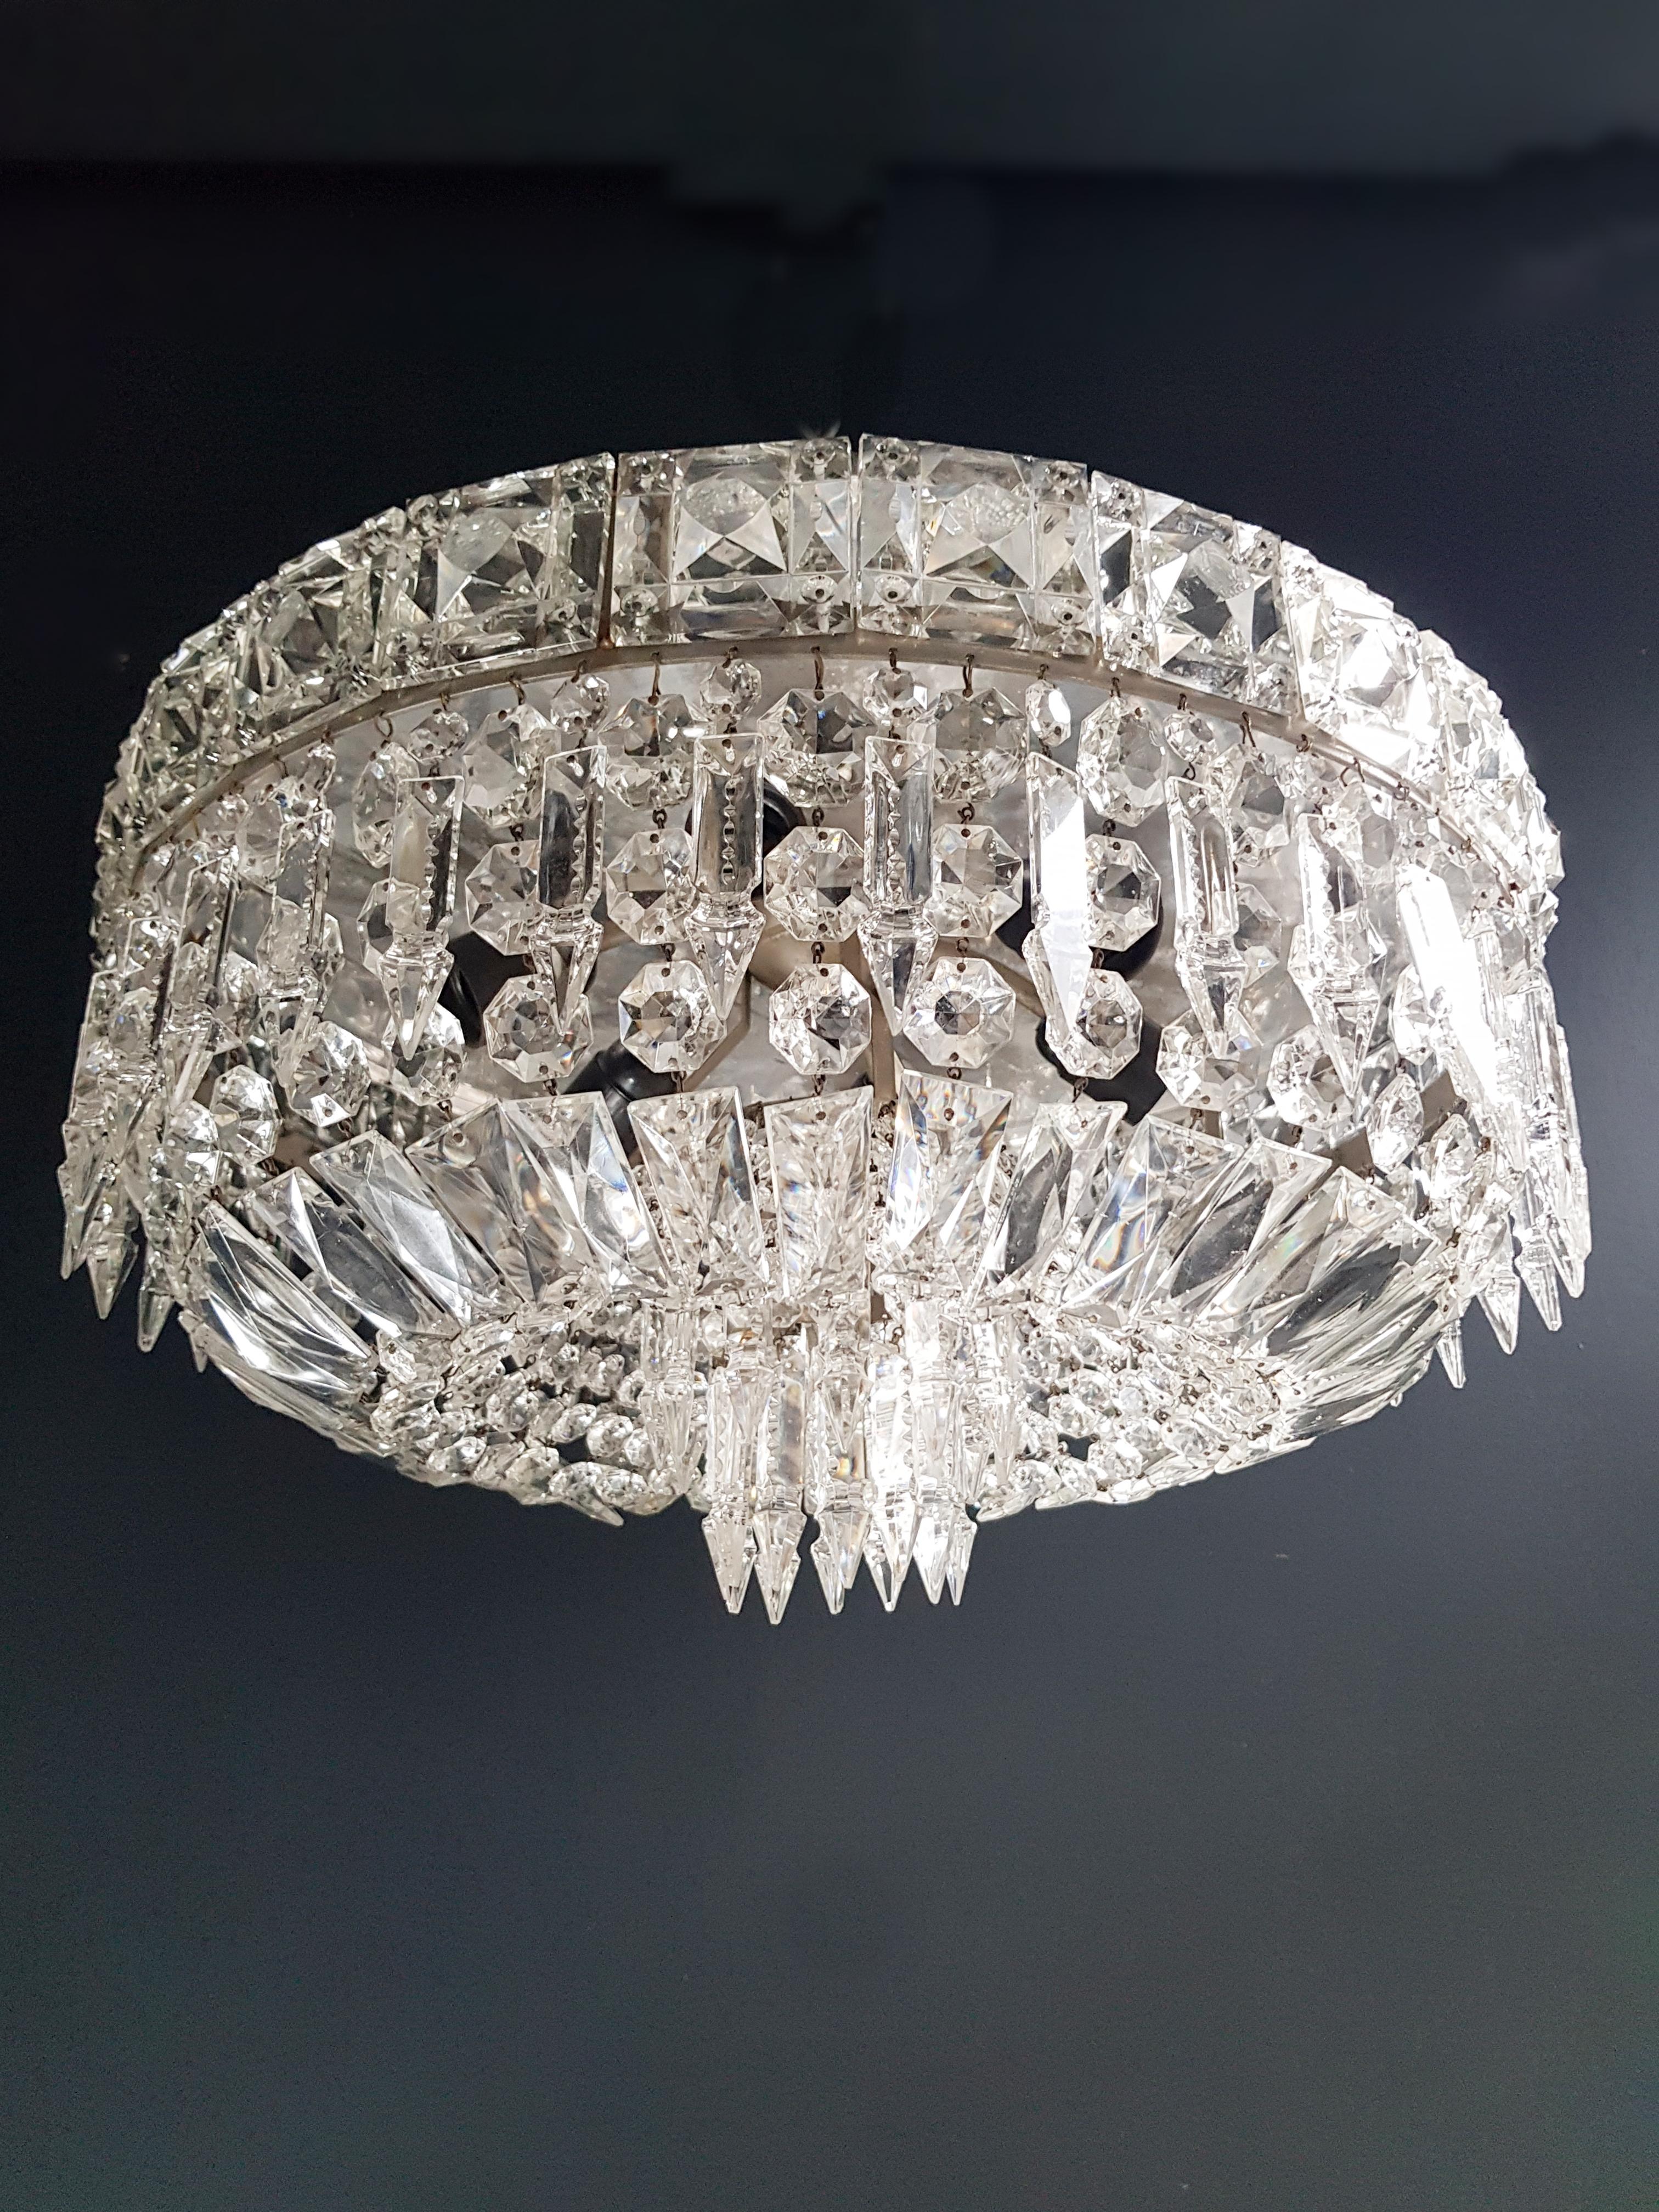 European Art Deco Low Plafonnier Silver Crystal Chandelier Lustre Ceiling Lamp Antique